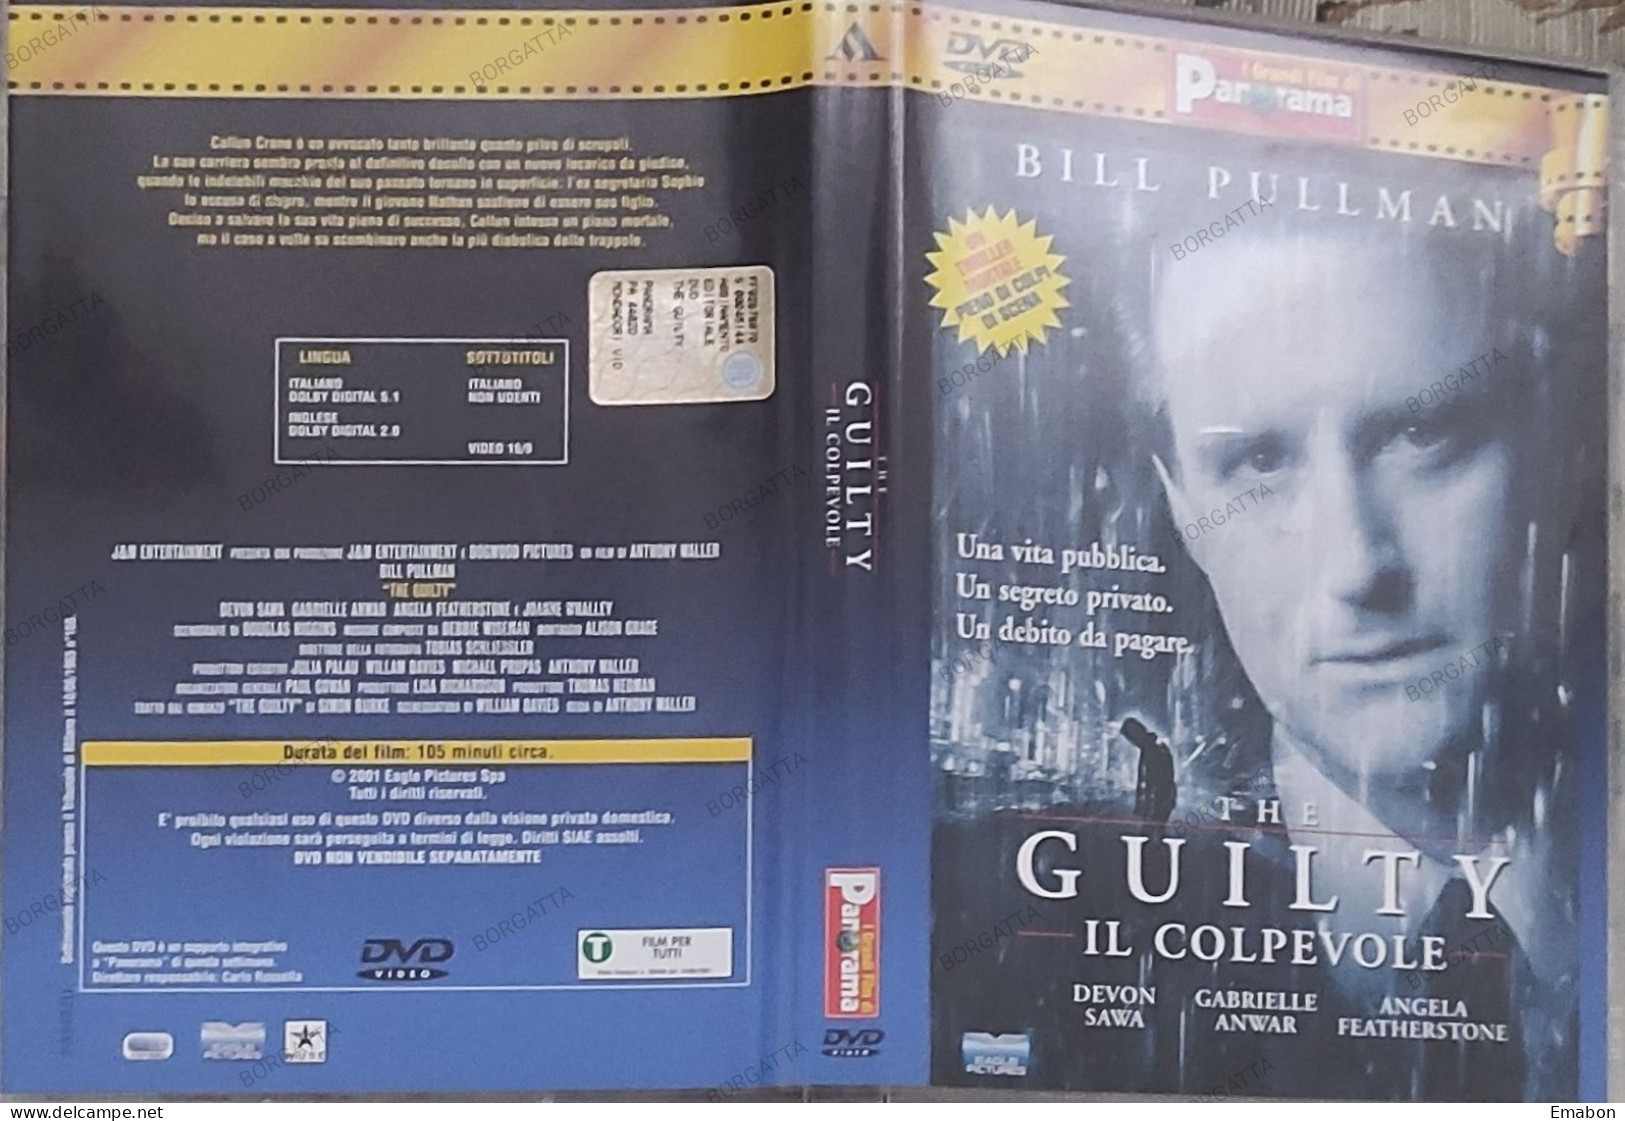 BORGATTA - THRILLER - Dvd  " THE GUILTY IL COLPEVOLE " BILL PULLMAN - PAL 2 - PANORAMA 2001-  USATO In Buono Stato - Drame